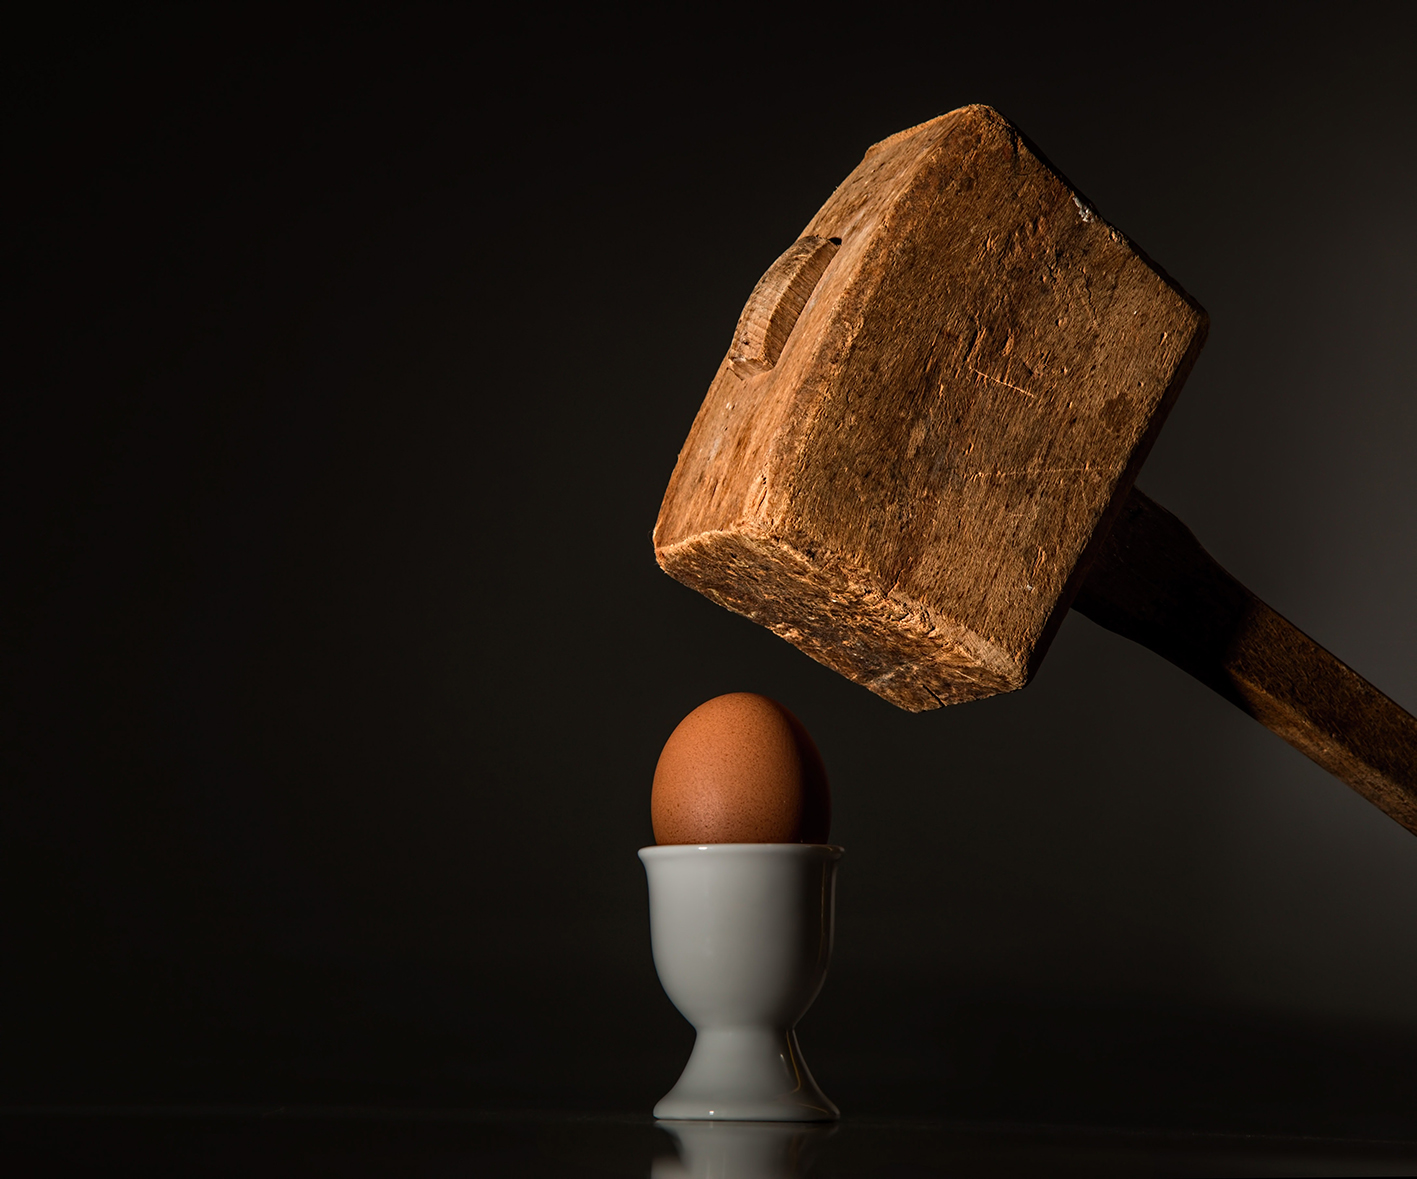 sledgehammer above cooked egg